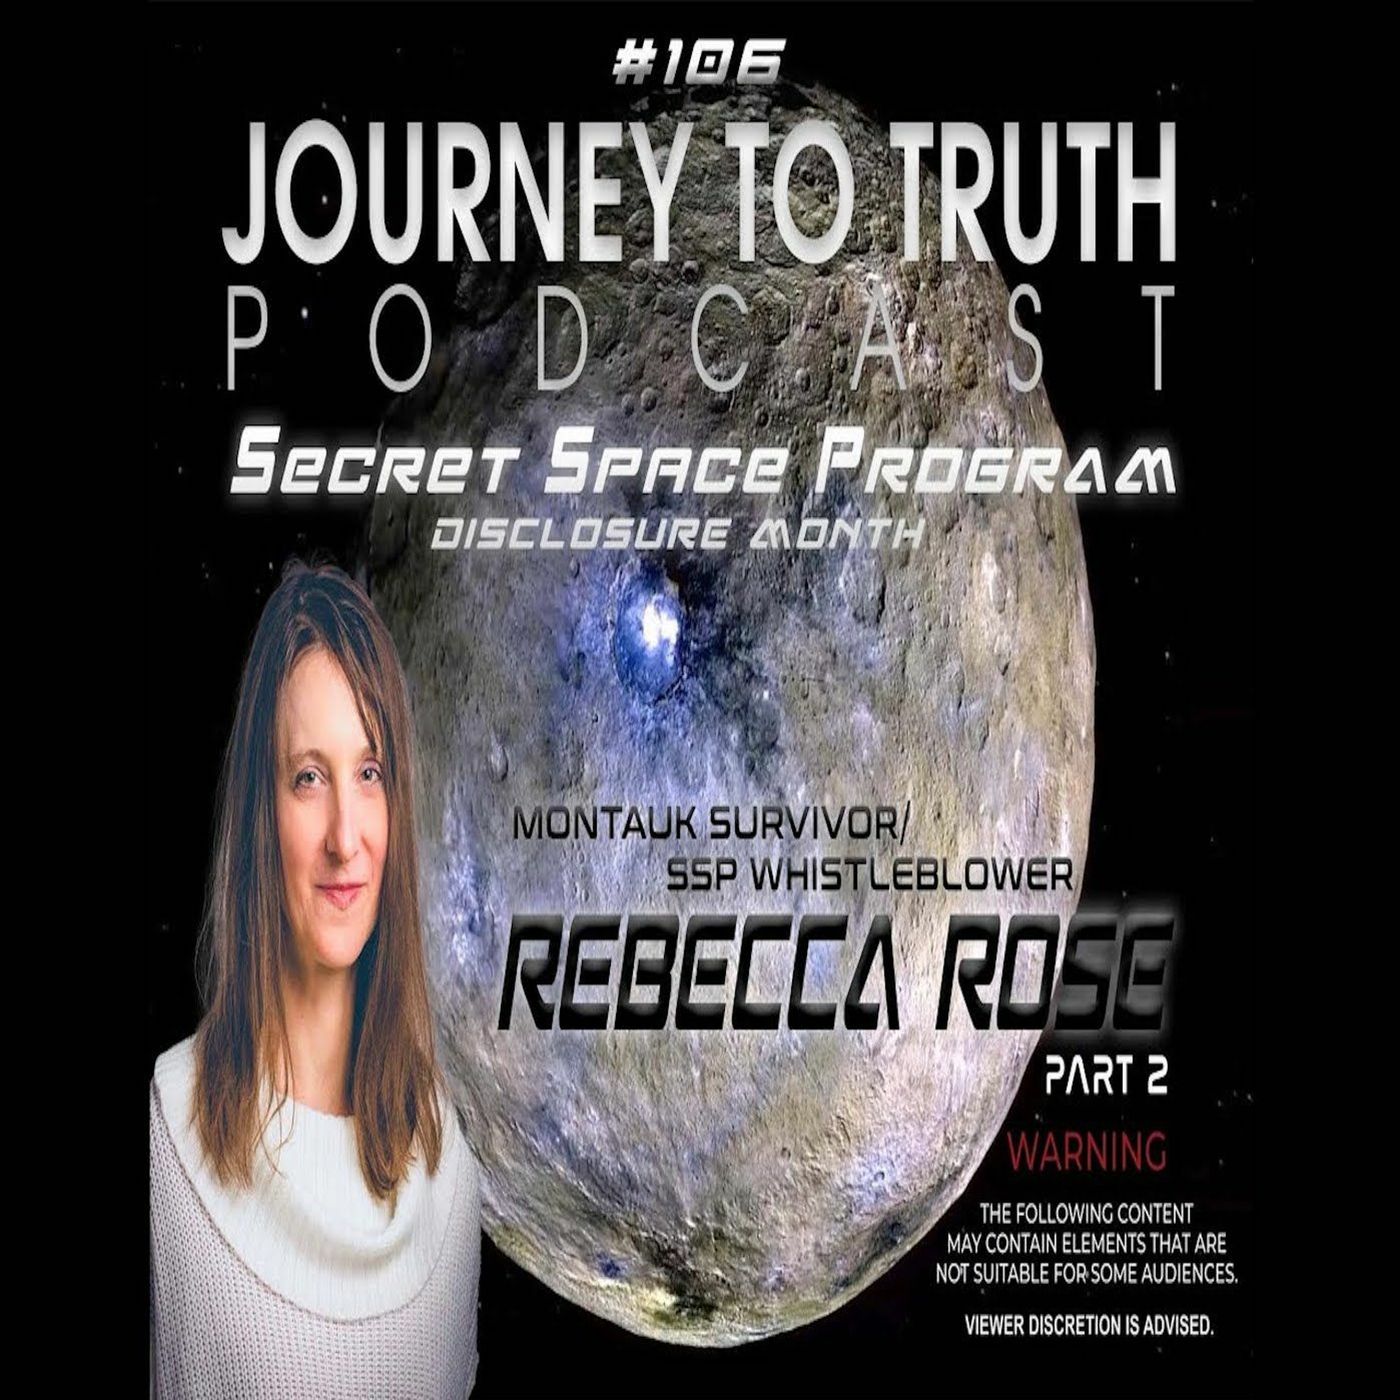 EP 106 (Part 2) - Rebecca Rose - Montauk Survivor / SSP Whistleblower